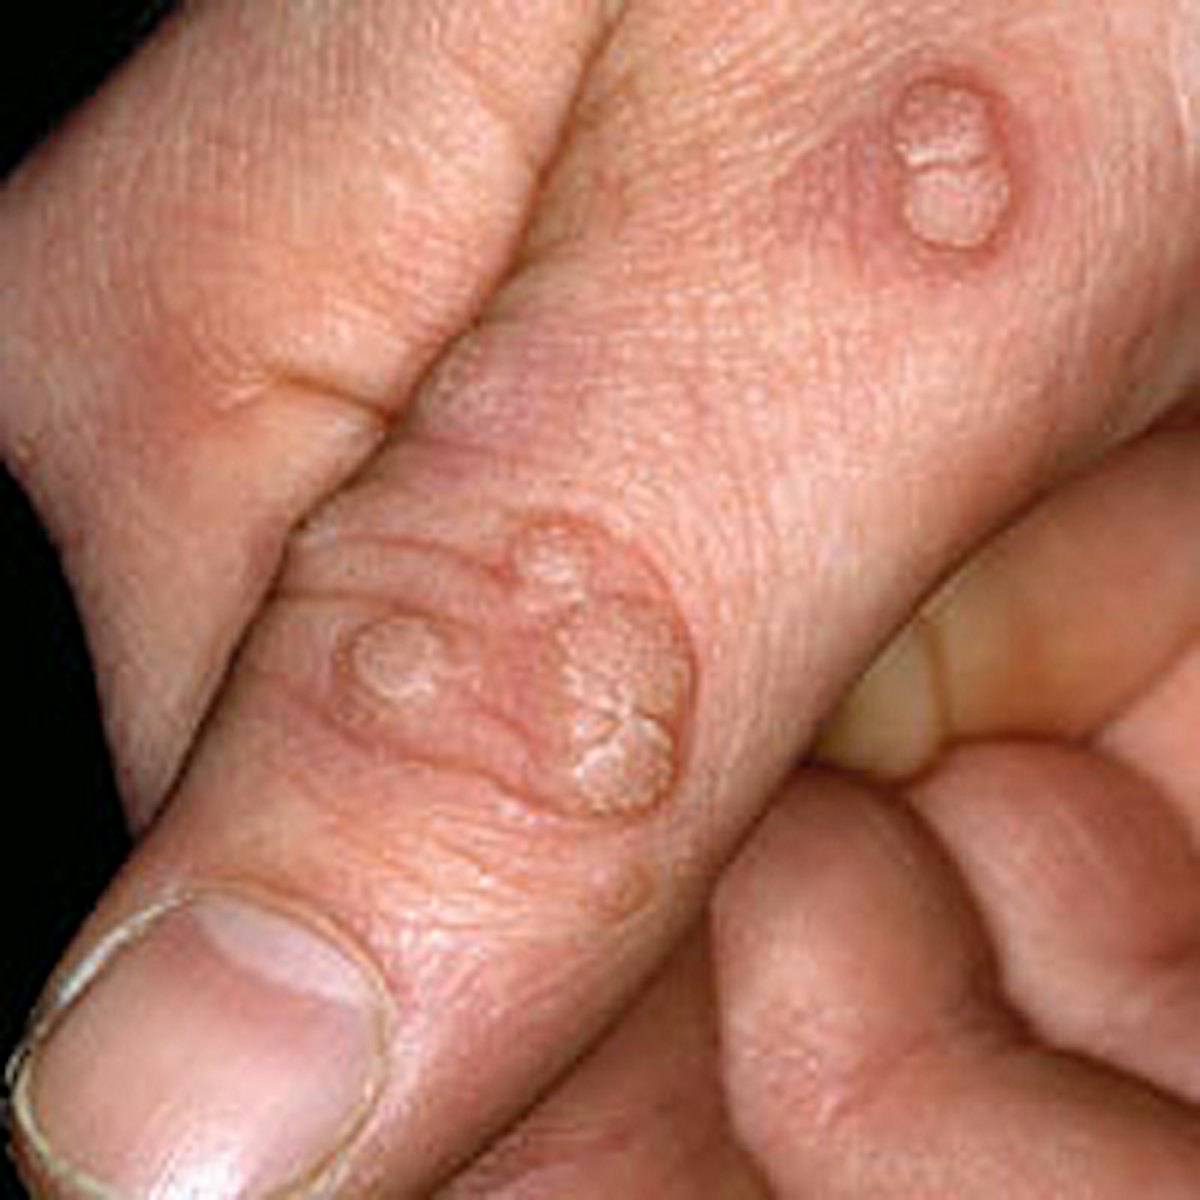 Nail Clinic Warts Nailpro